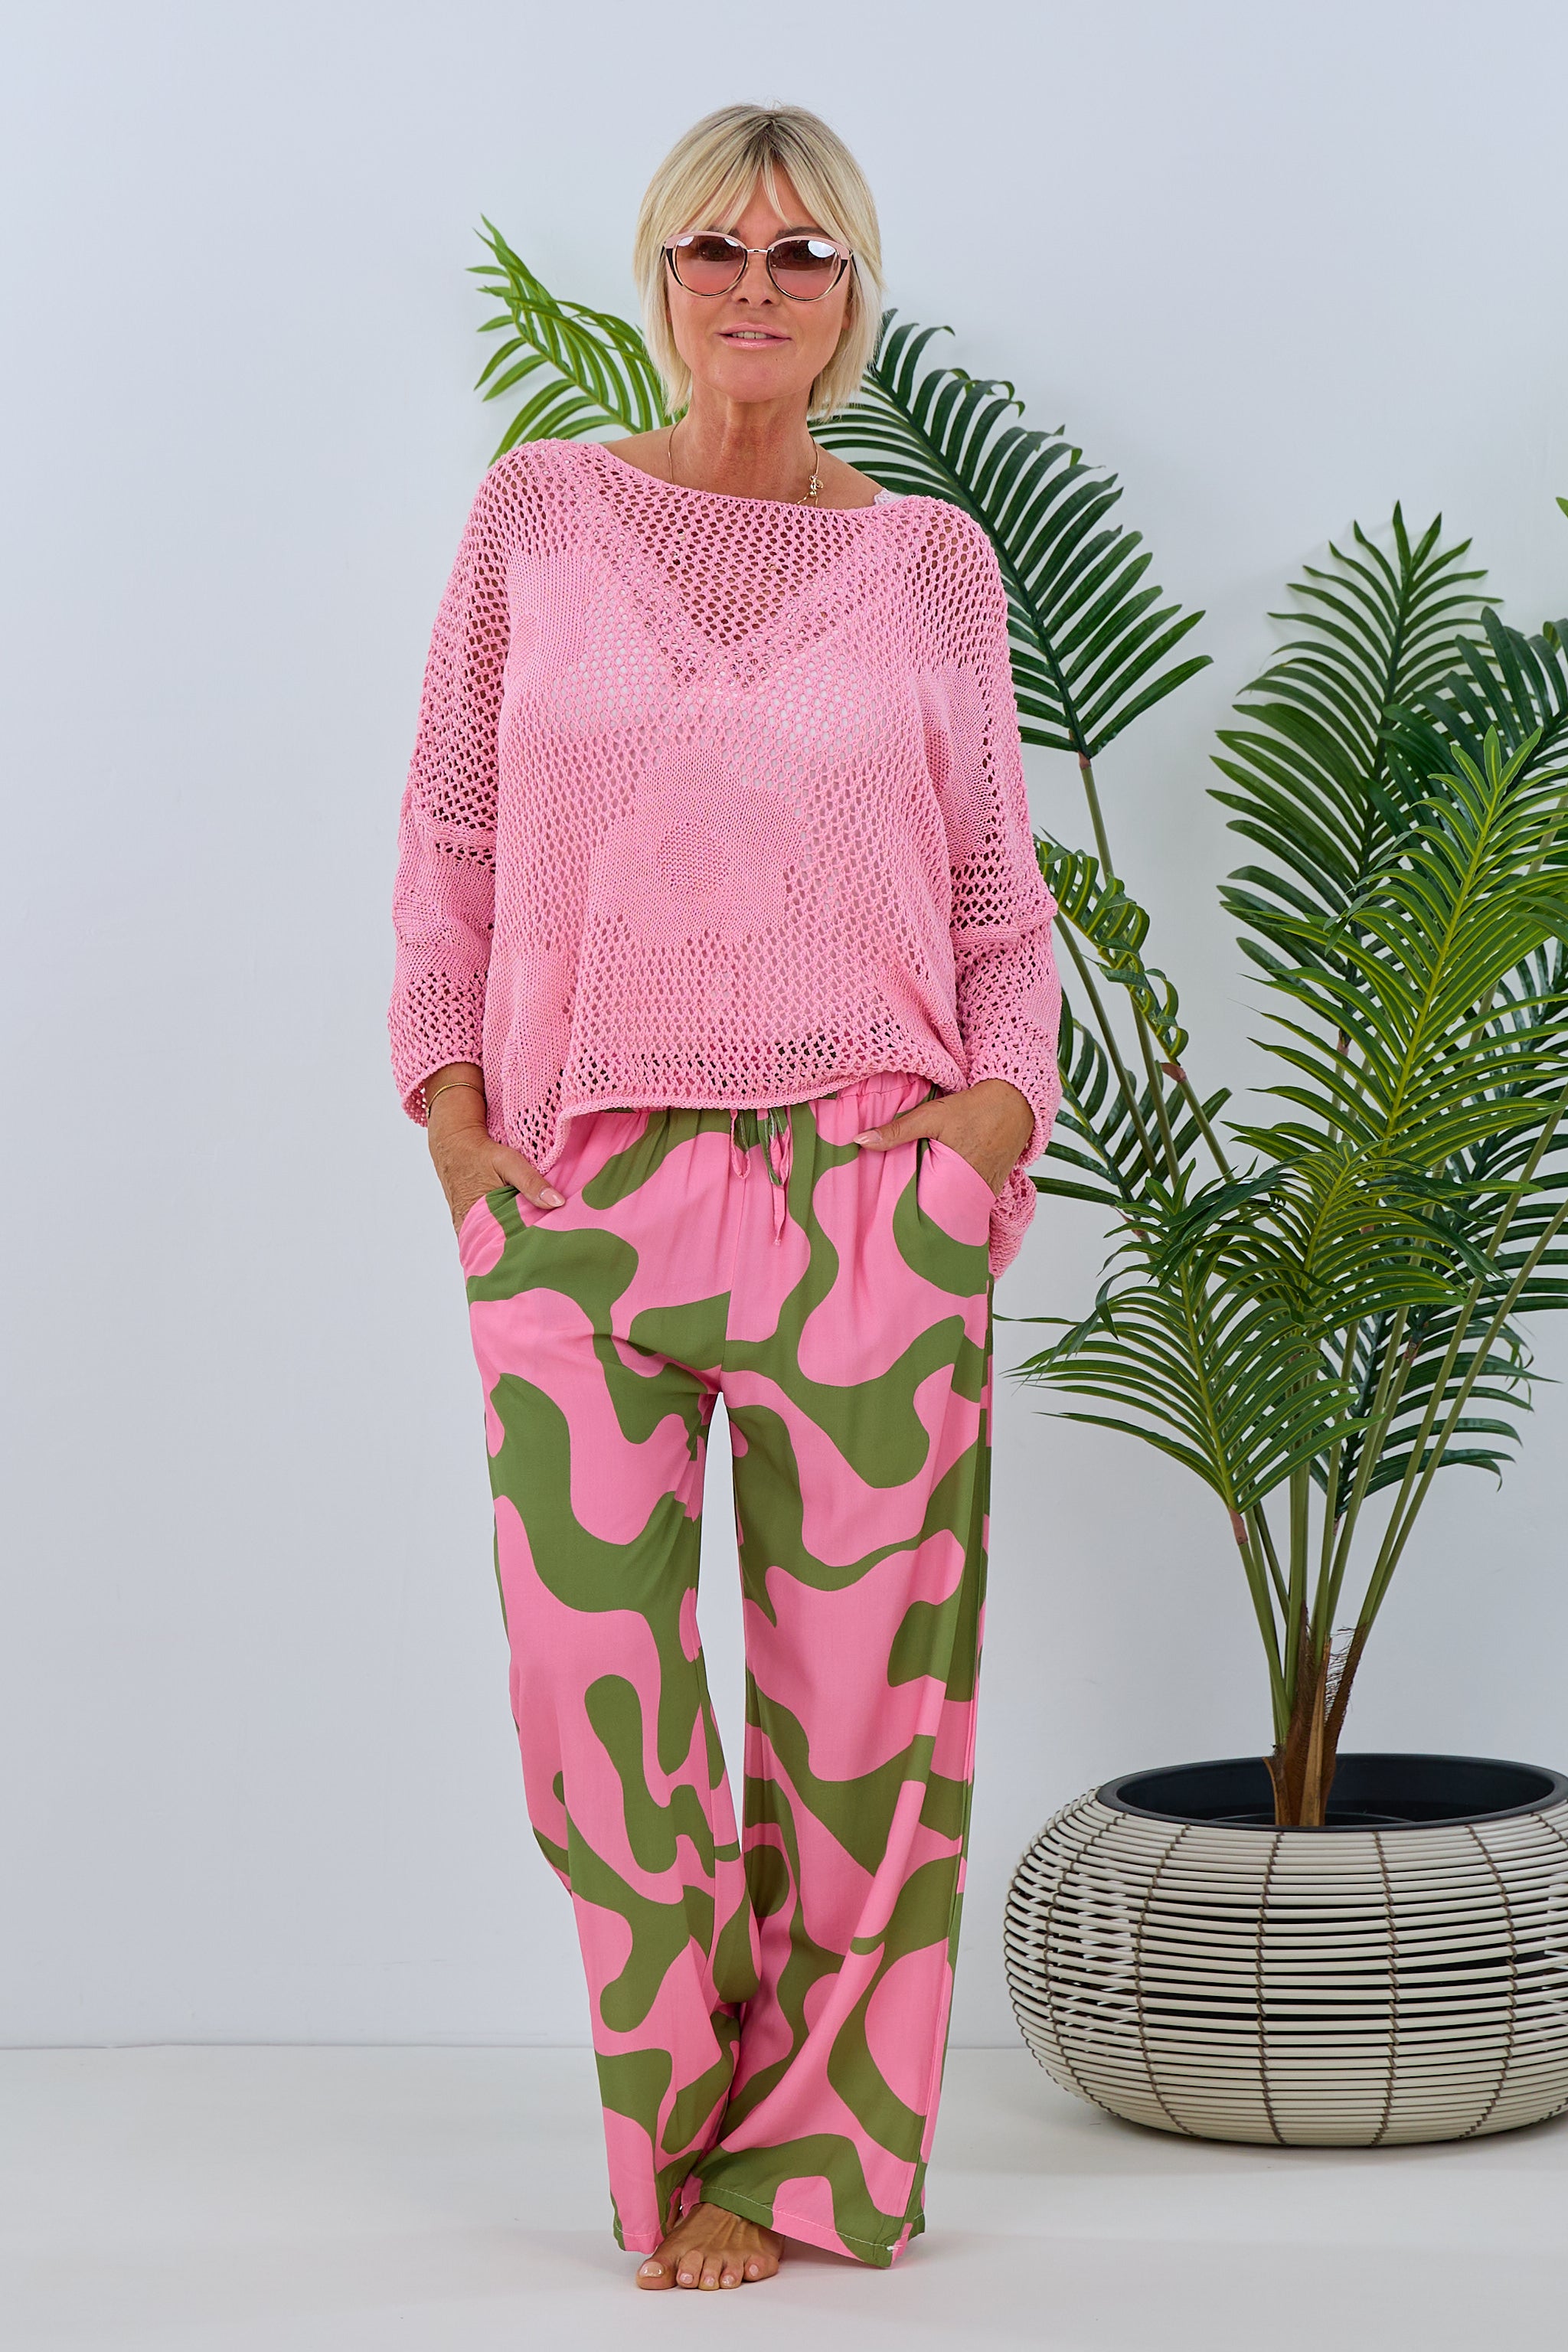 Damen moderne Hose mit Muster in rosa-grün von Trends & Lifestyle